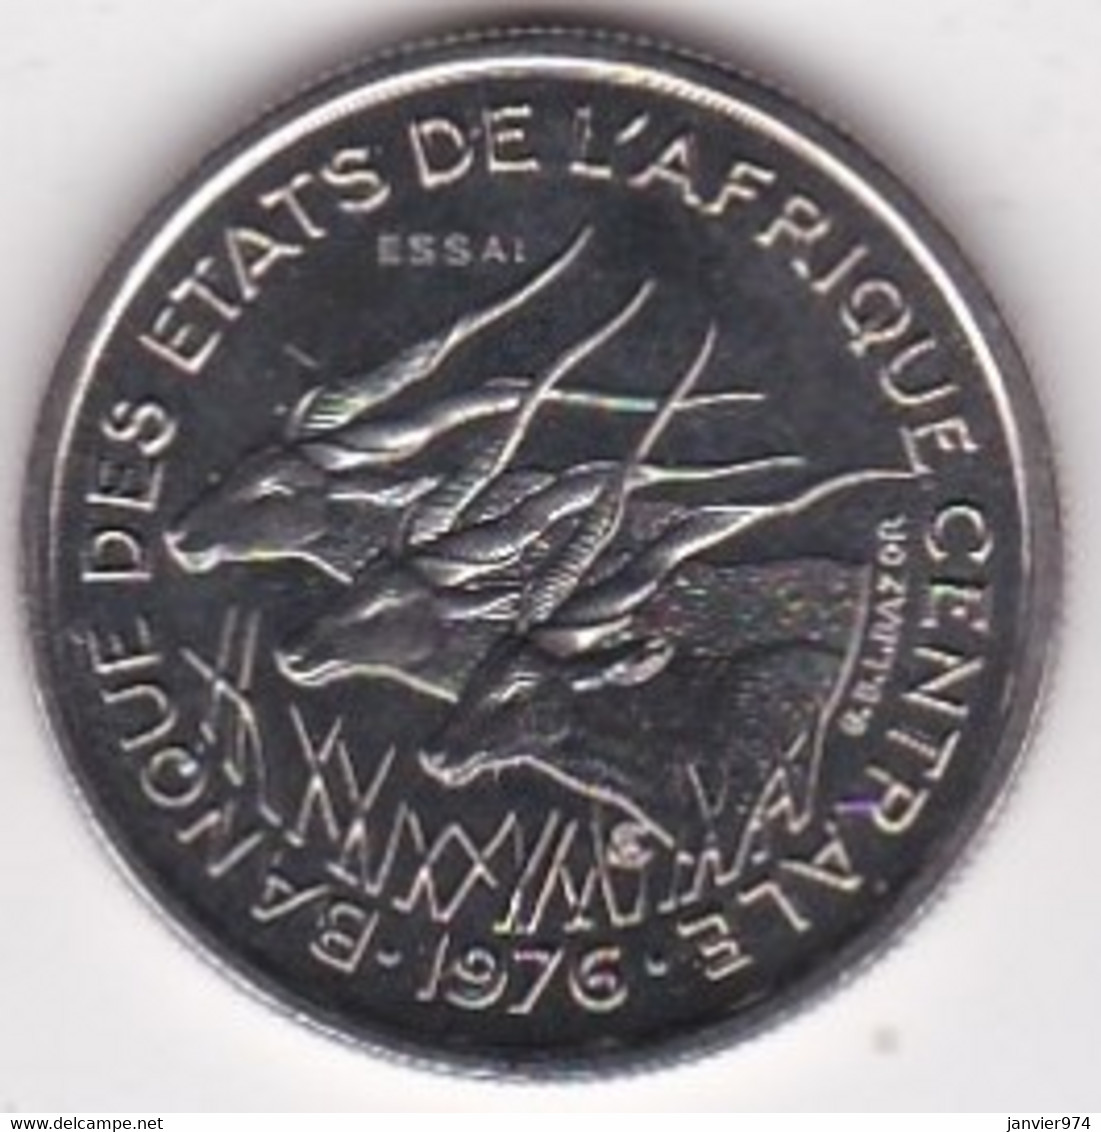 Republique Centrafricaine 50 Francs ESSAI 1976 B. Bronze Aluminium. KM# E 8 - Centrafricaine (République)